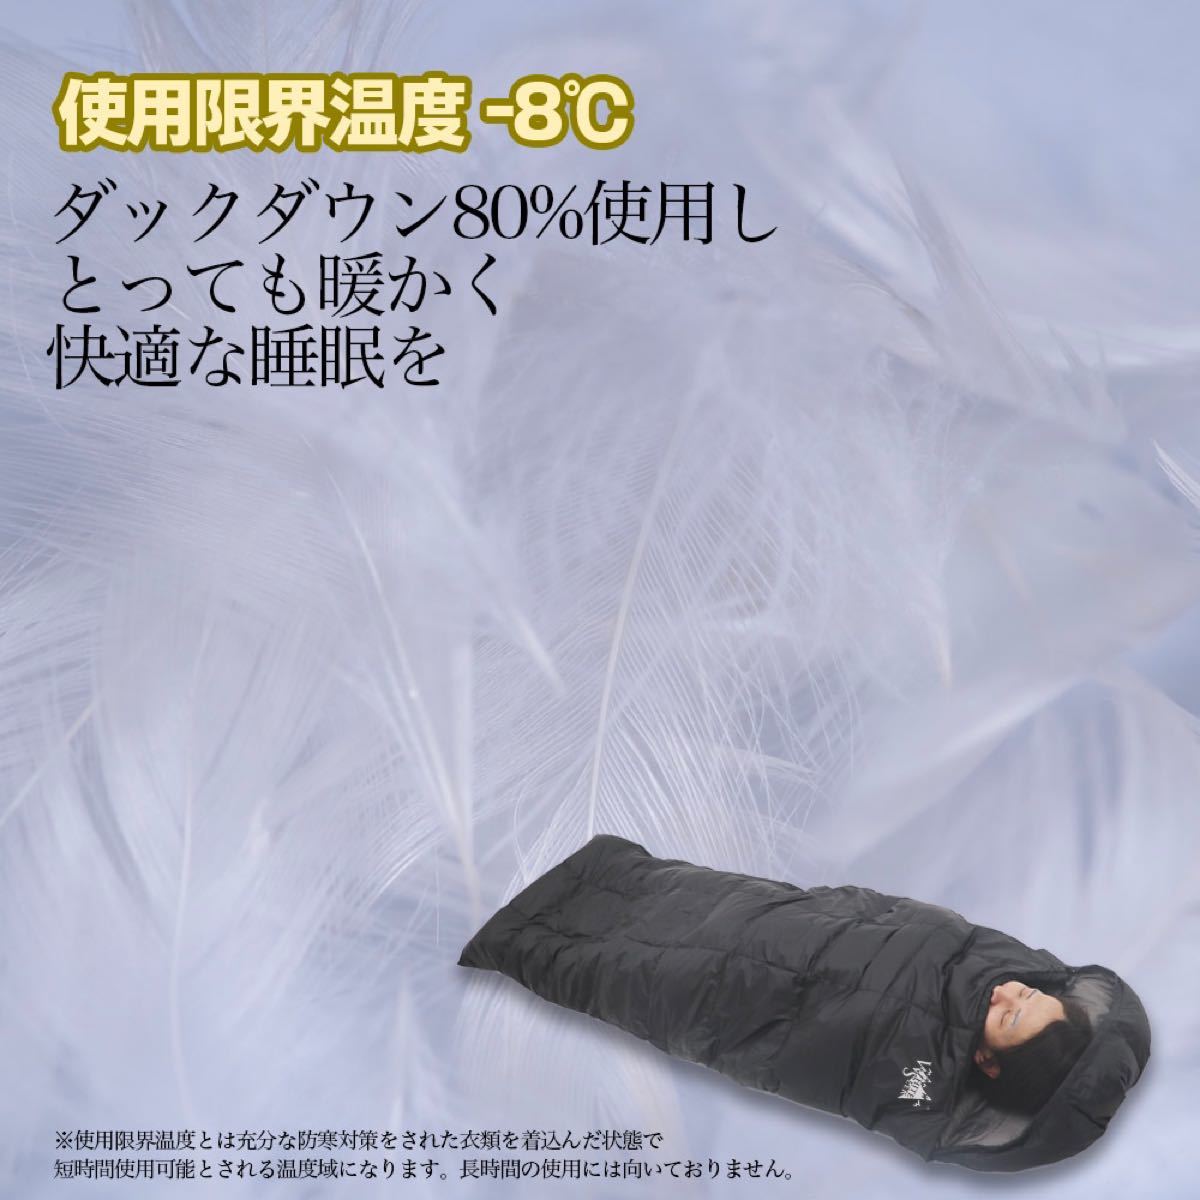 【訳あり】寝袋 羽毛 ダウン コンパクト -8℃ 1200g キャンプ 4シーズン レッド 洗濯済み